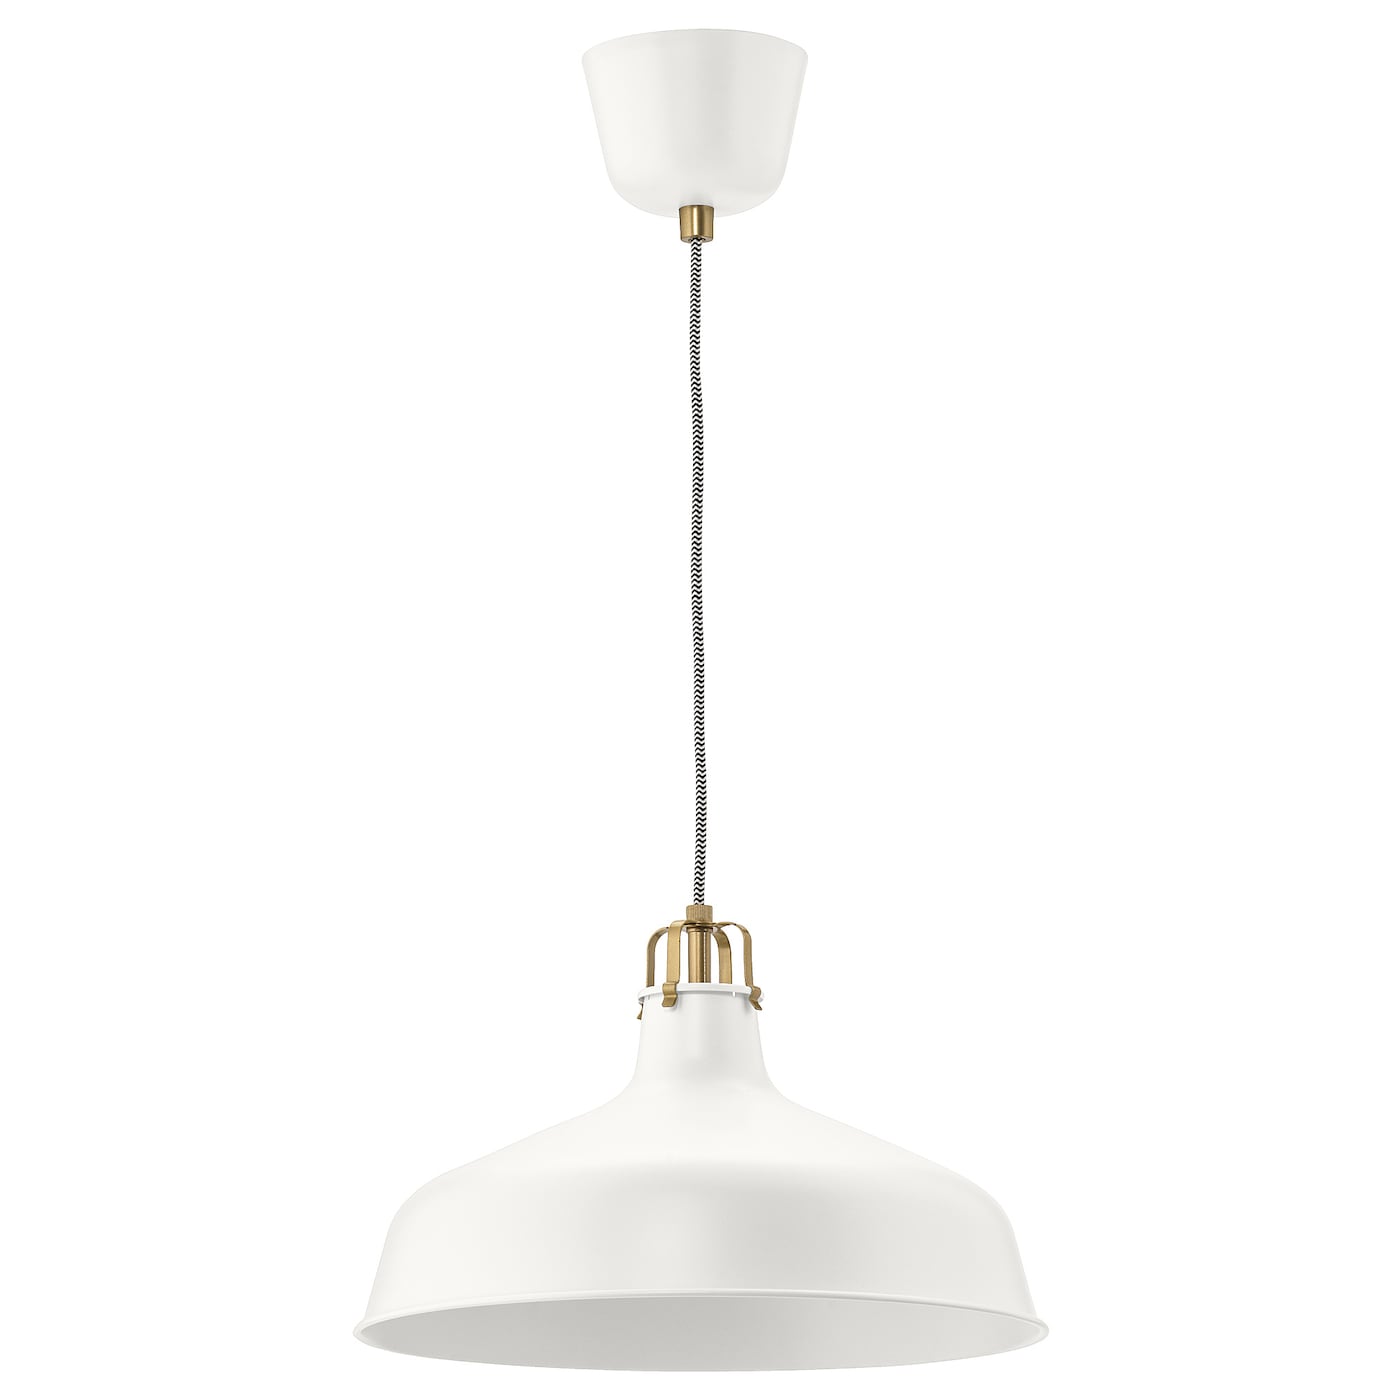 Подвесной светильник - RANARP IKEA / РАНАРП ИКЕА, 38 см, белый